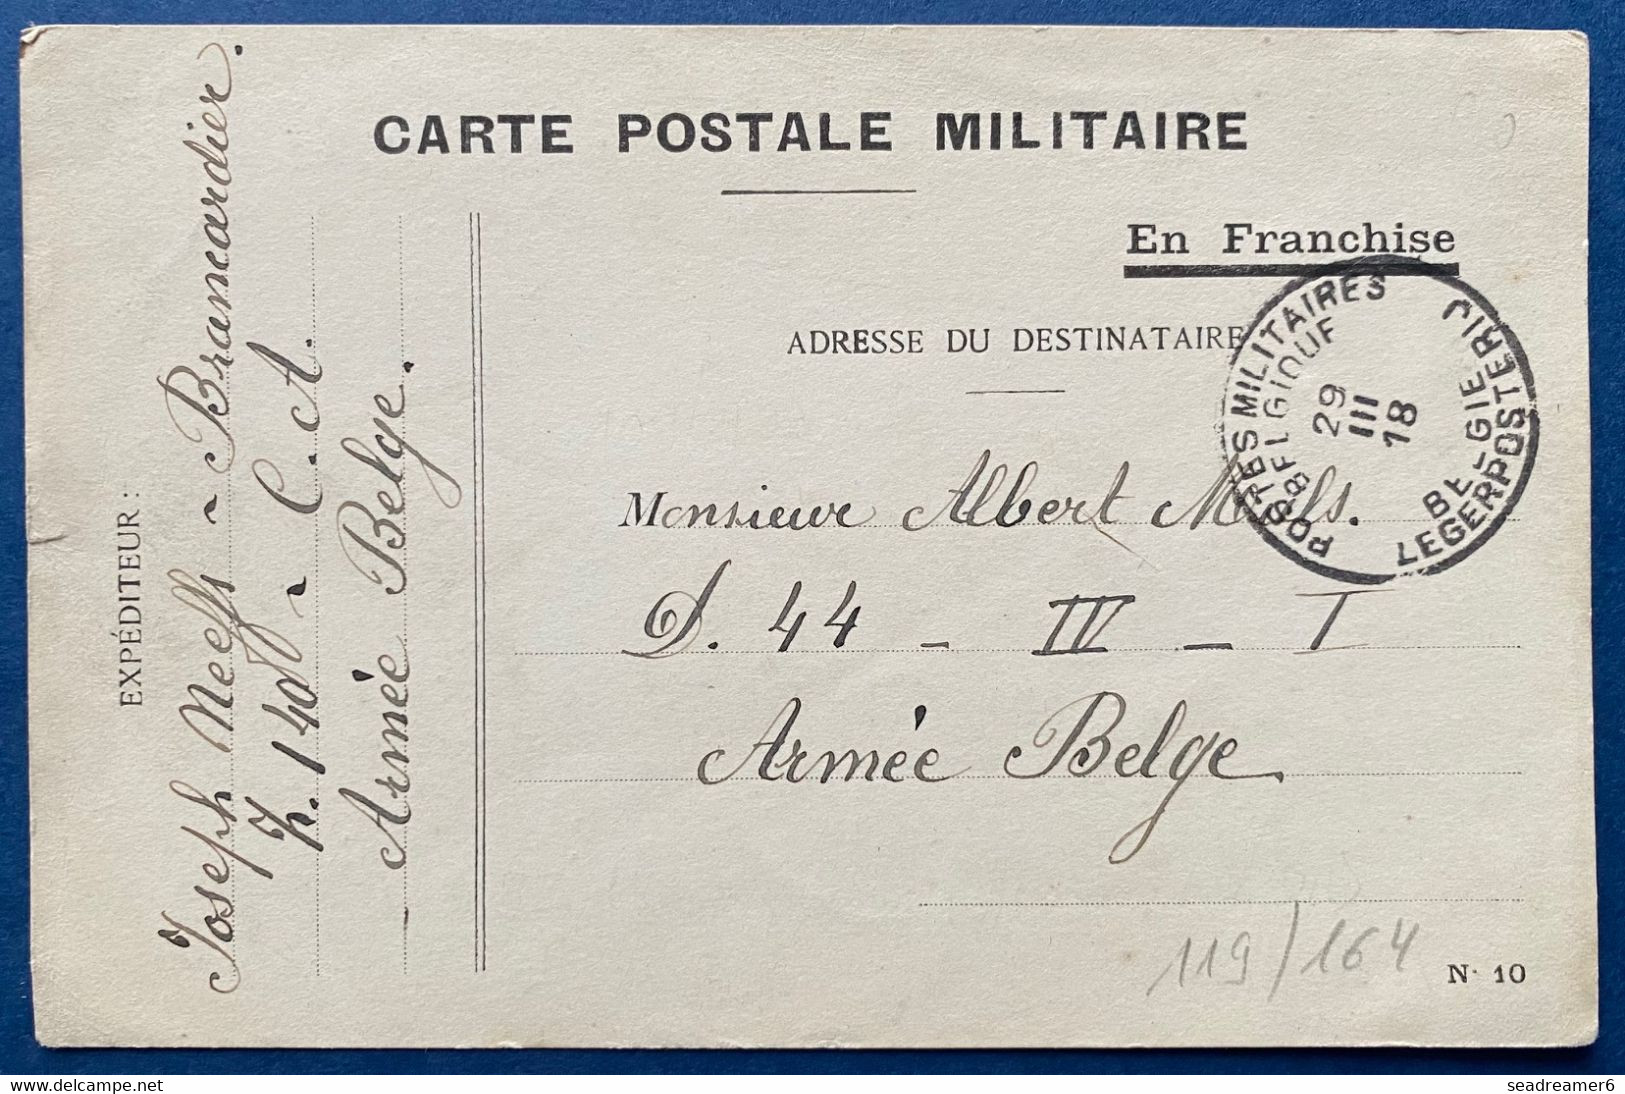 Carte Postale Militaire En Franchise Type N°10 Obl Dateur 29 Mars 1918 Postes Militaires Belgique PMB Pour Un Soldat TTB - Armée Belge